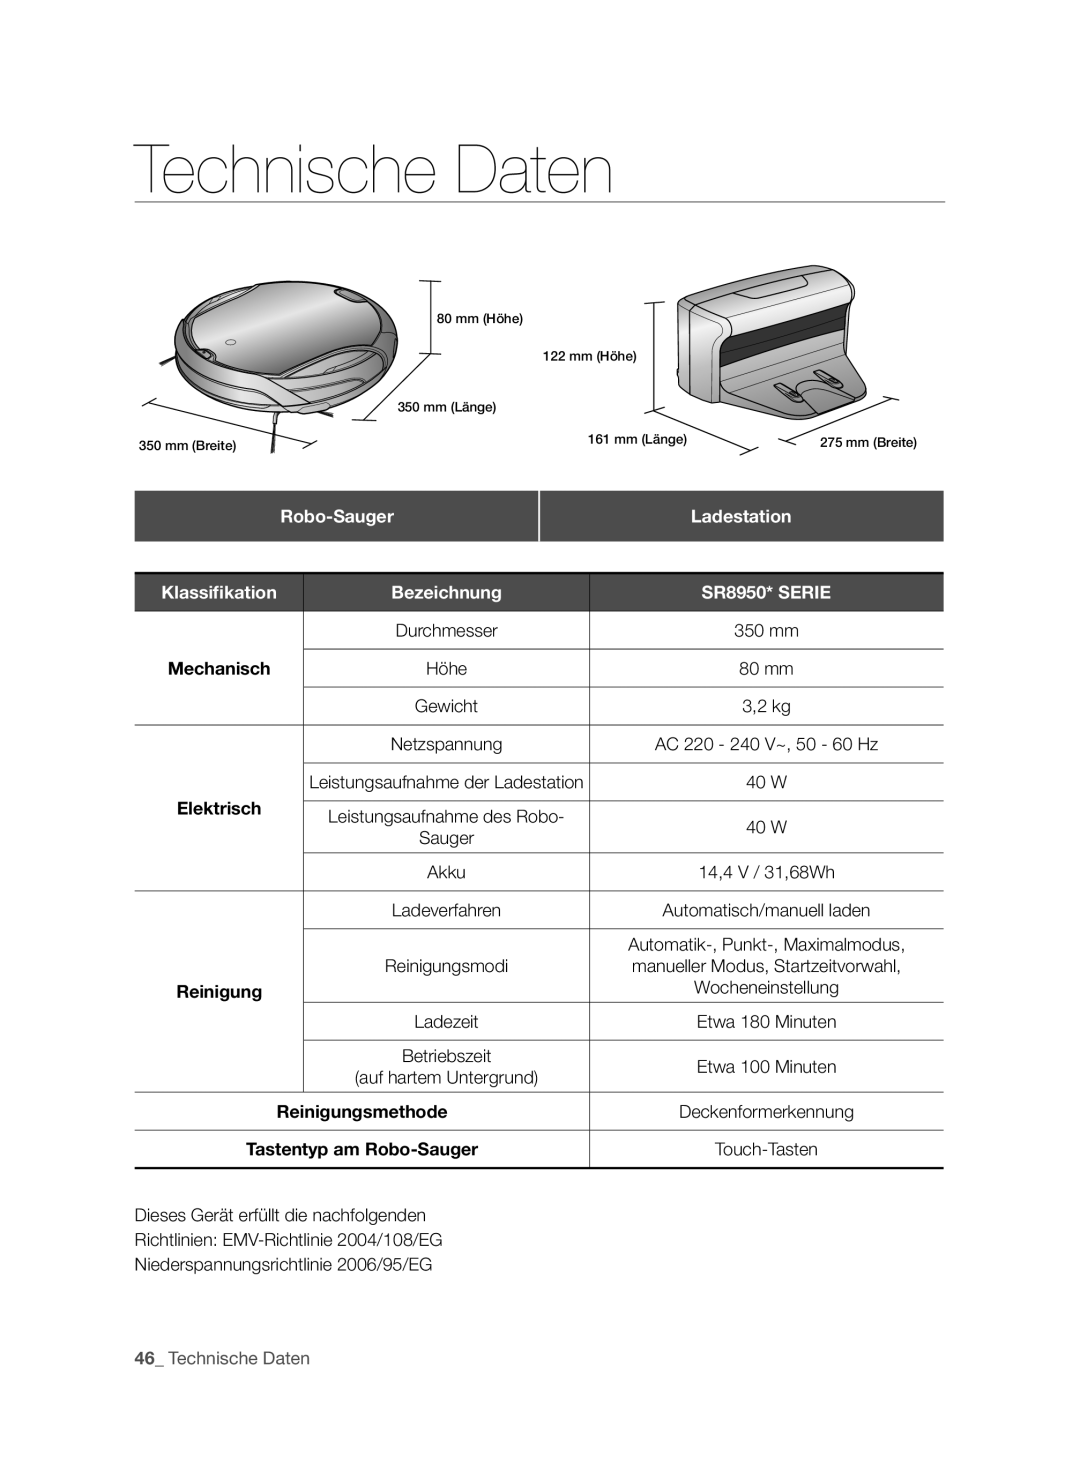 Samsung VCR8950L3B/XEO Technische Daten, Robo-Sauger, Ladestation, Bezeichnung, SR8950* SERIE, Klassiﬁkation, Durchmesser 